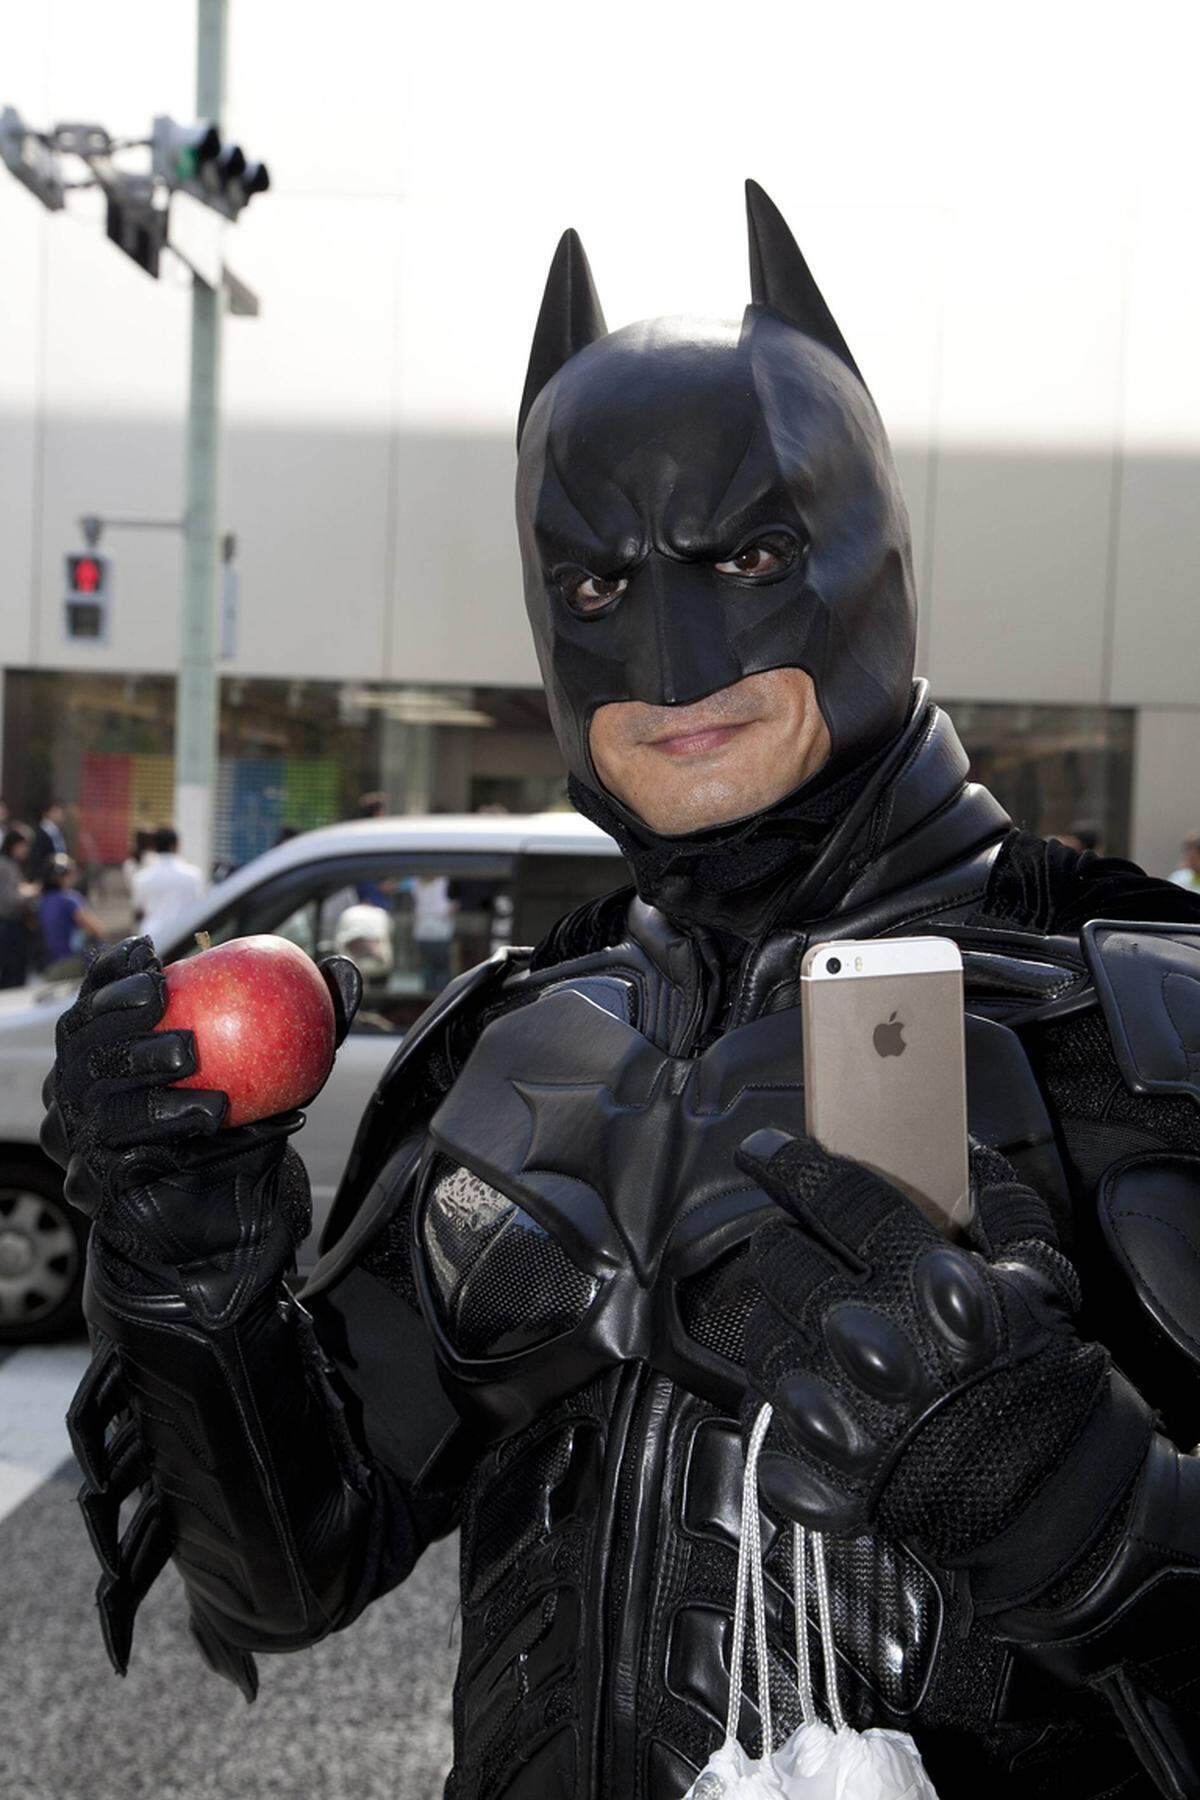 In der Warteschlange reihte sich auch Batman ein. Weiter: Mehr Eindrücke aus den Warteschlangen für iPhone 5S und 5C